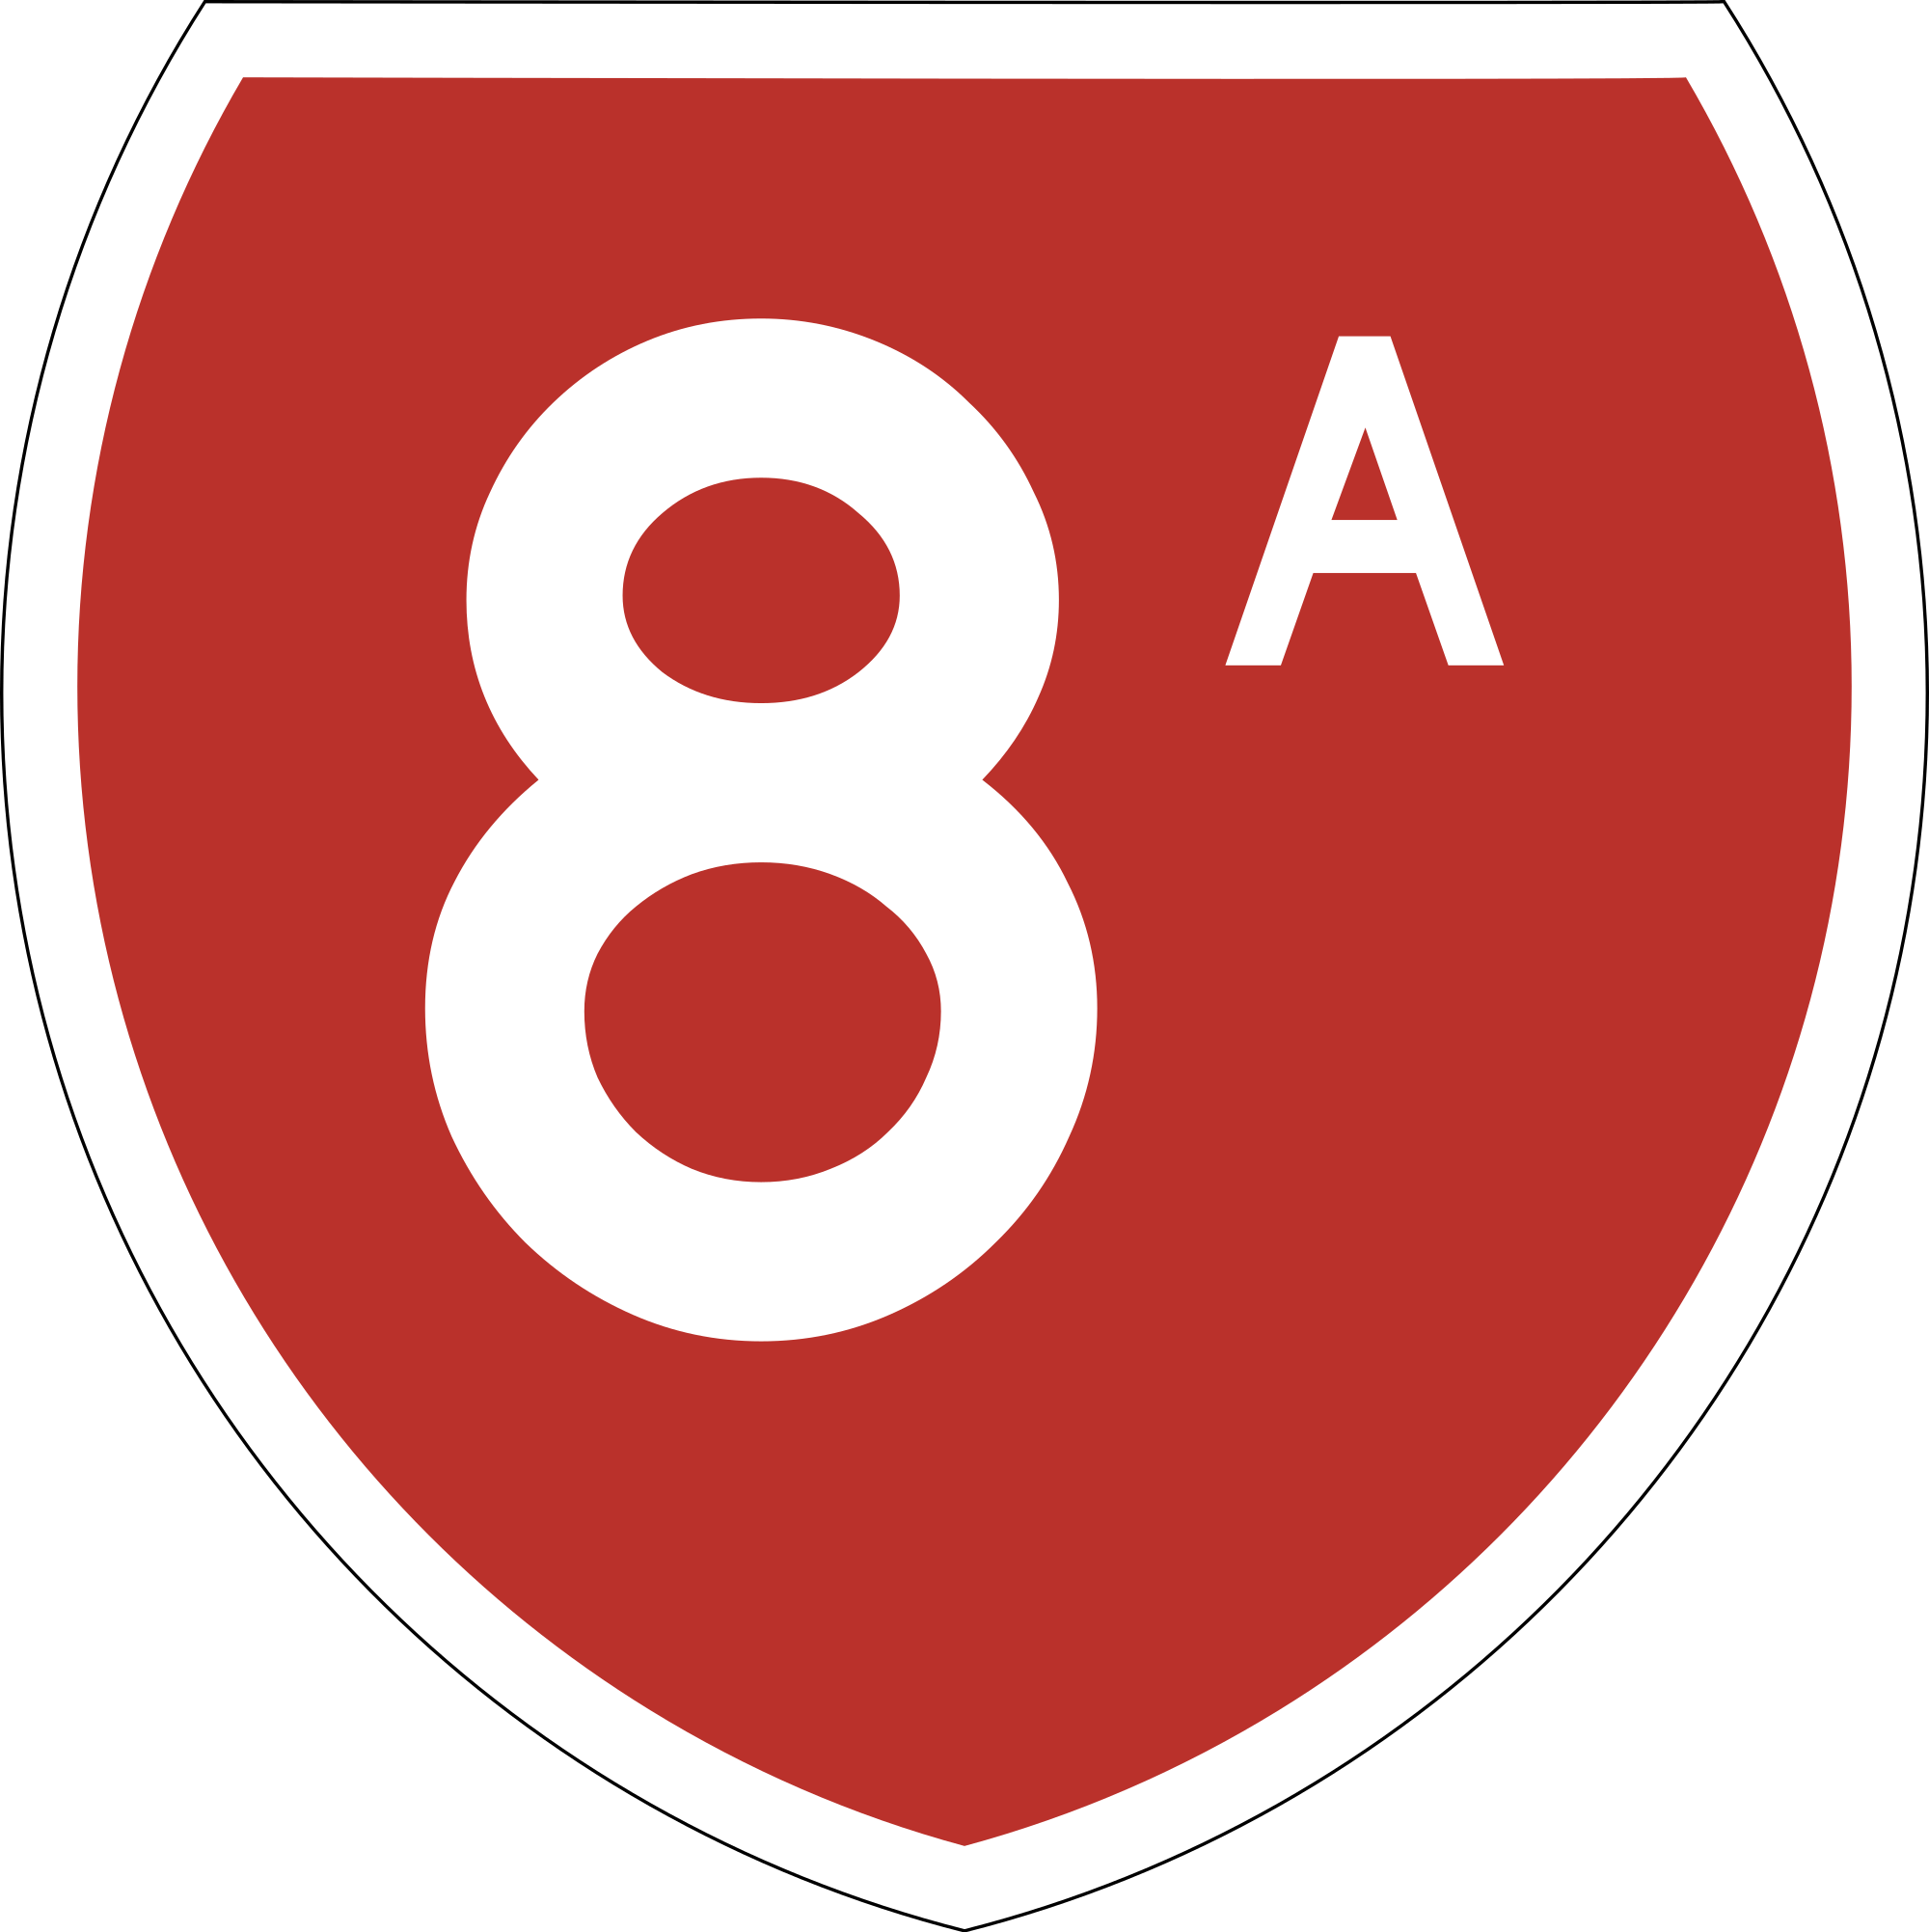  8A Logo LogoDix